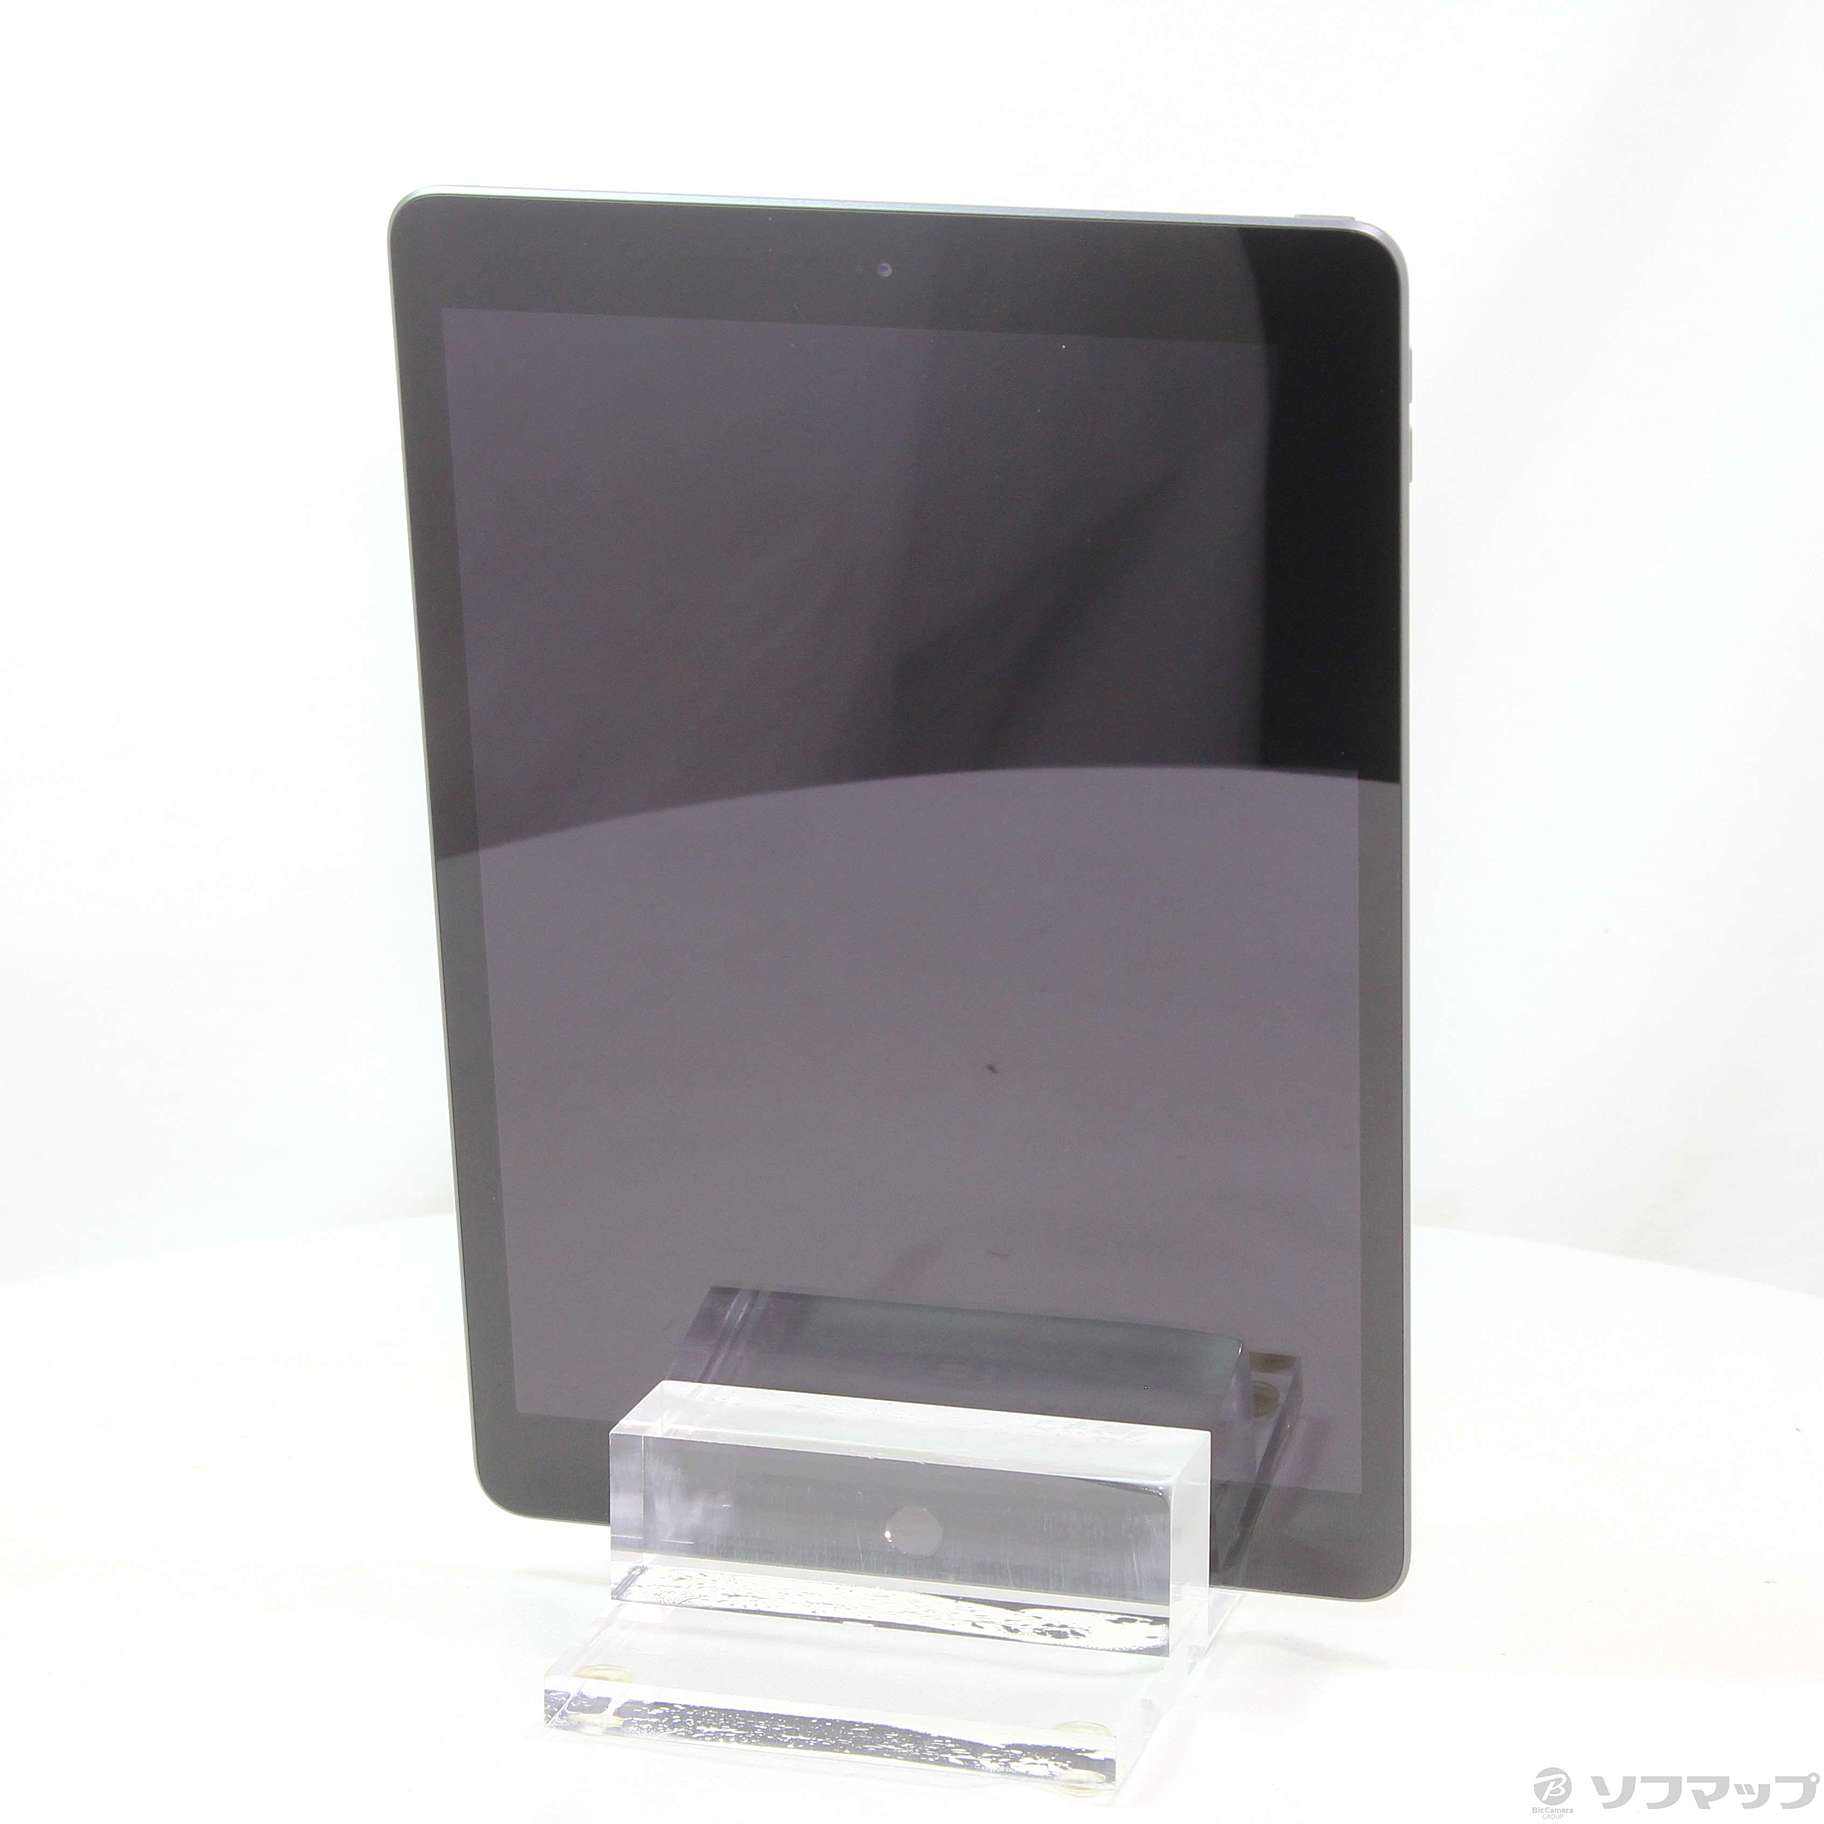 iPad 第7世代 32GB スペースグレイ MW742LL／A Wi-Fi